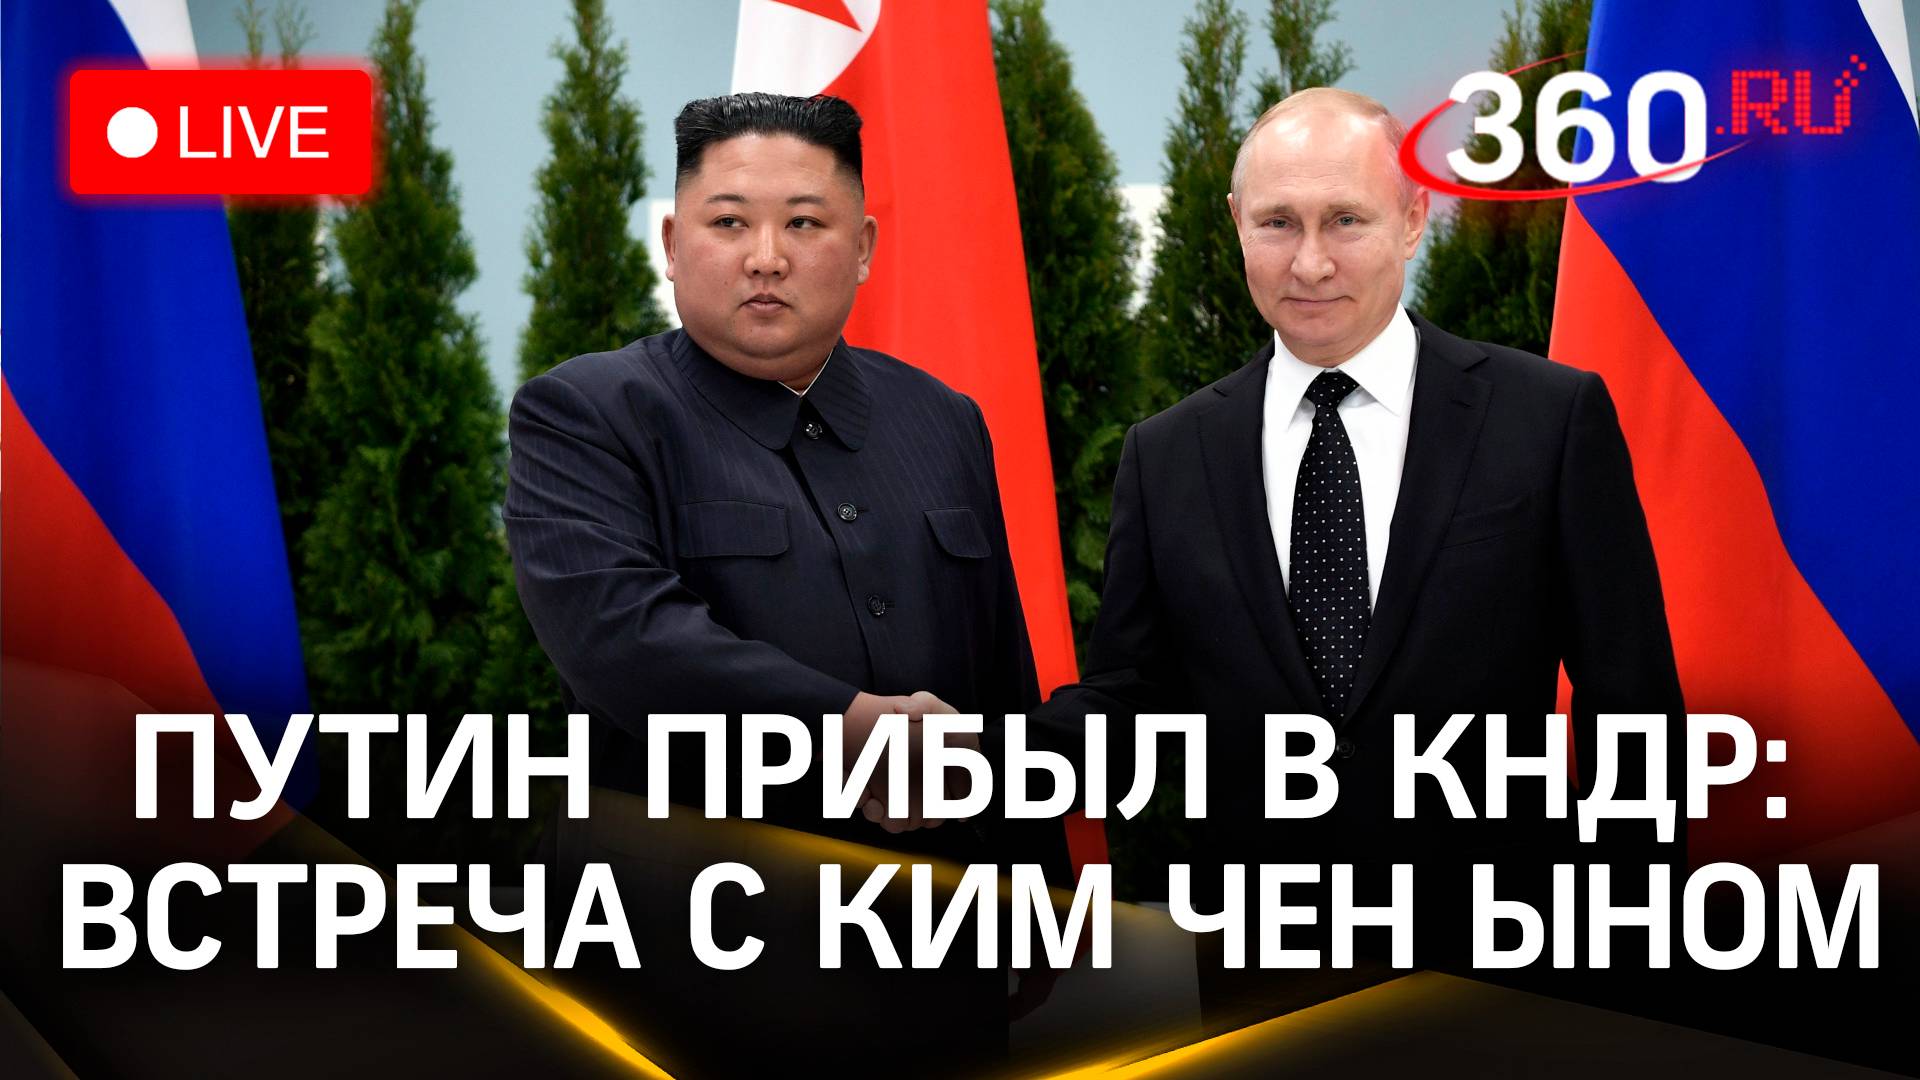 Путин прибыл в Пхеньян для встречи с Ким Чен Ыном | Трансляция